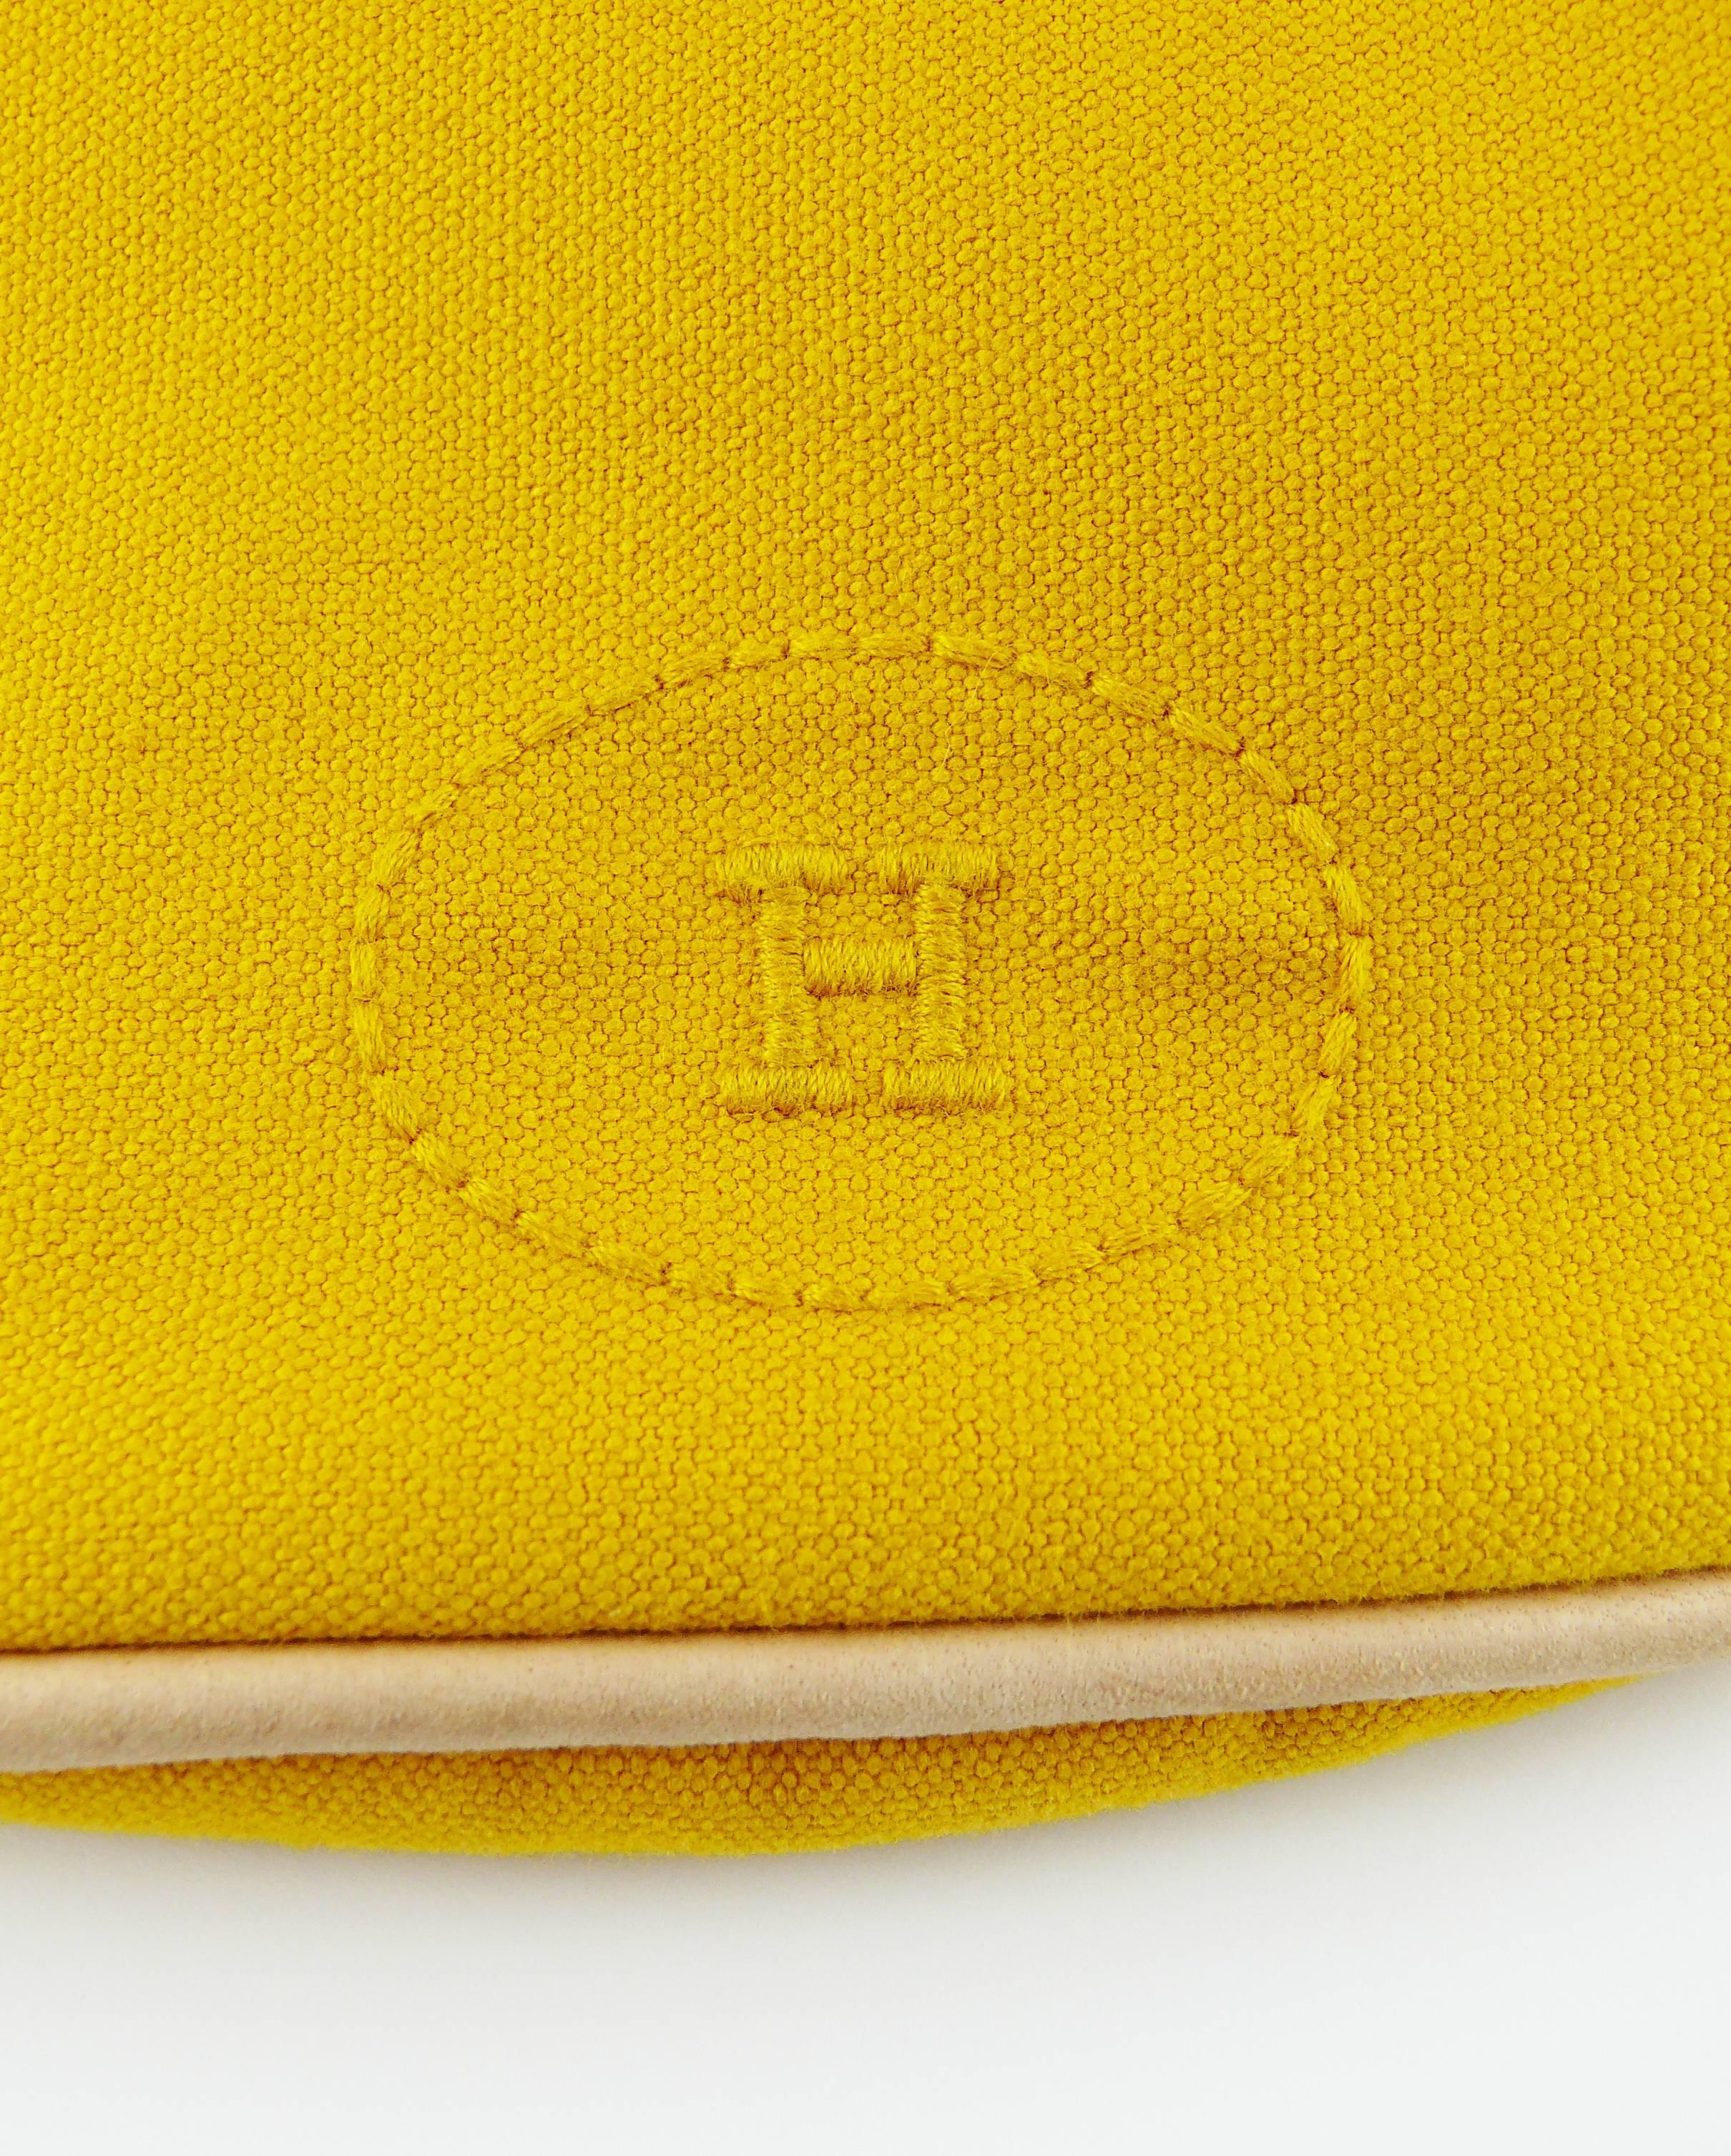 Hermès Vintage Saffron Yellow Sac Polochon Bag 2